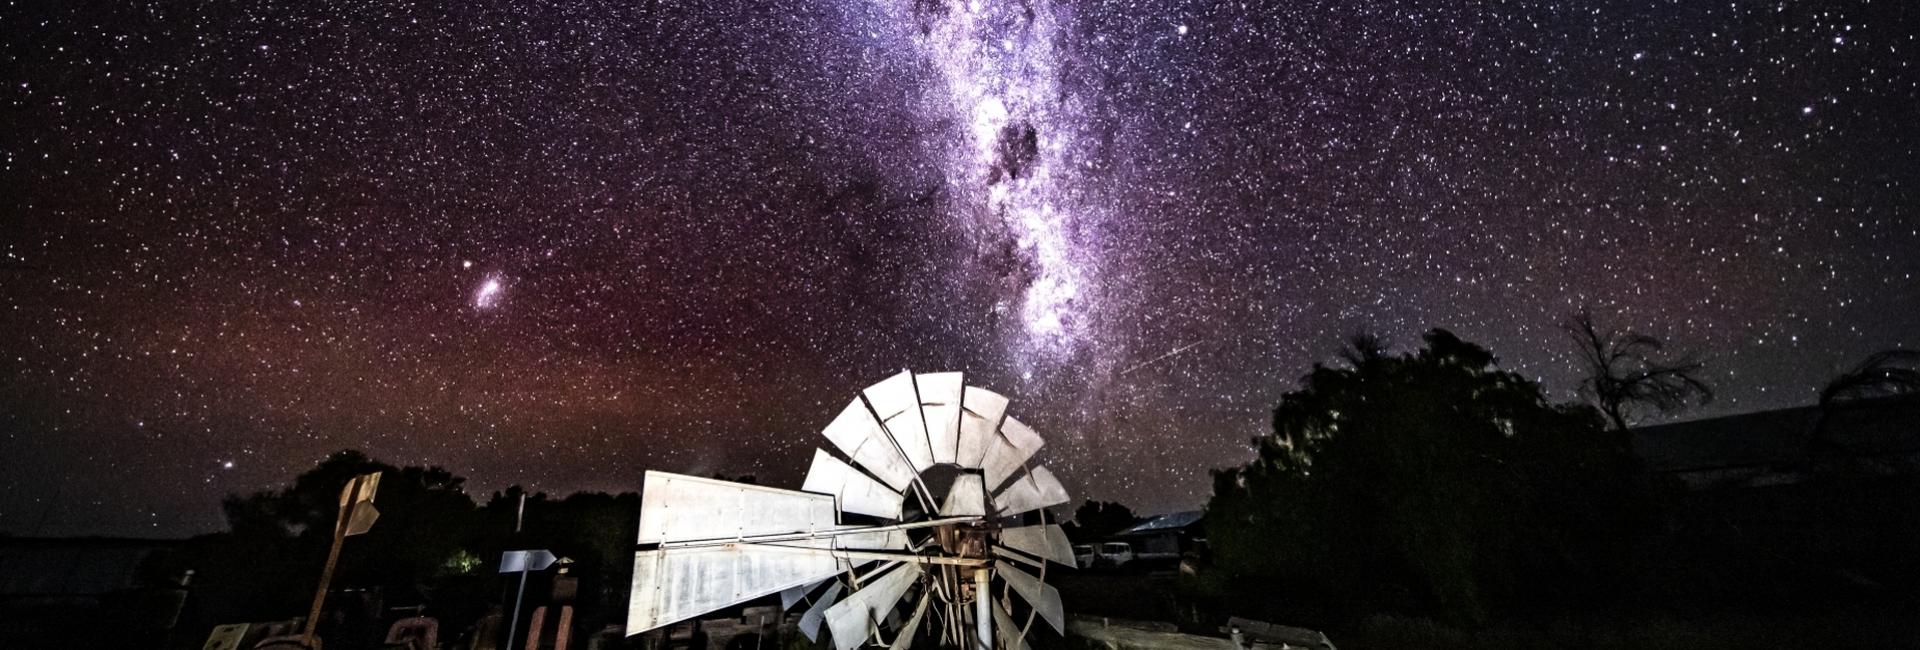 Milky Way, Wooleen Station by Sean Scott